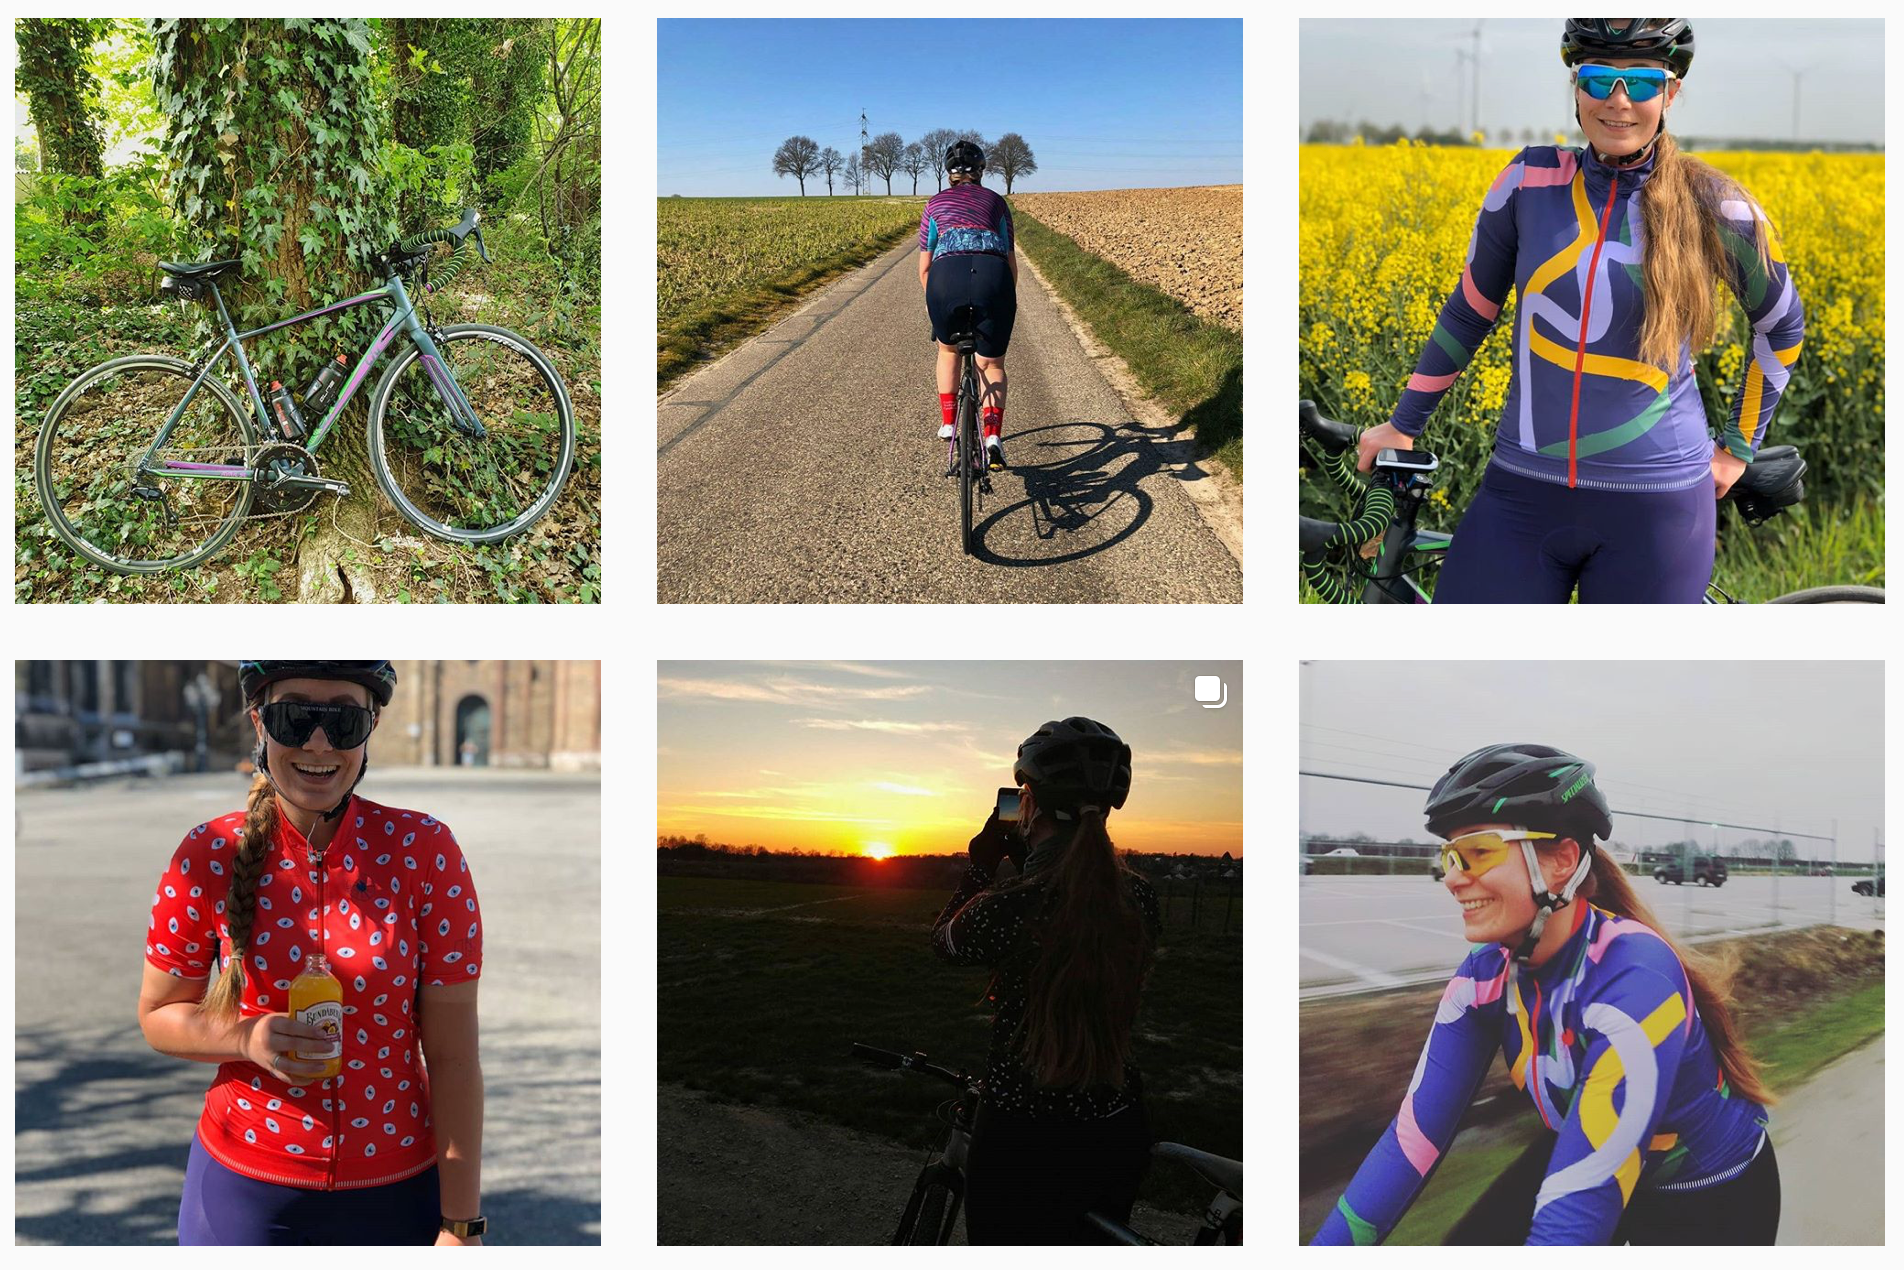 Aeenea Bisschops woman cycling instagram account